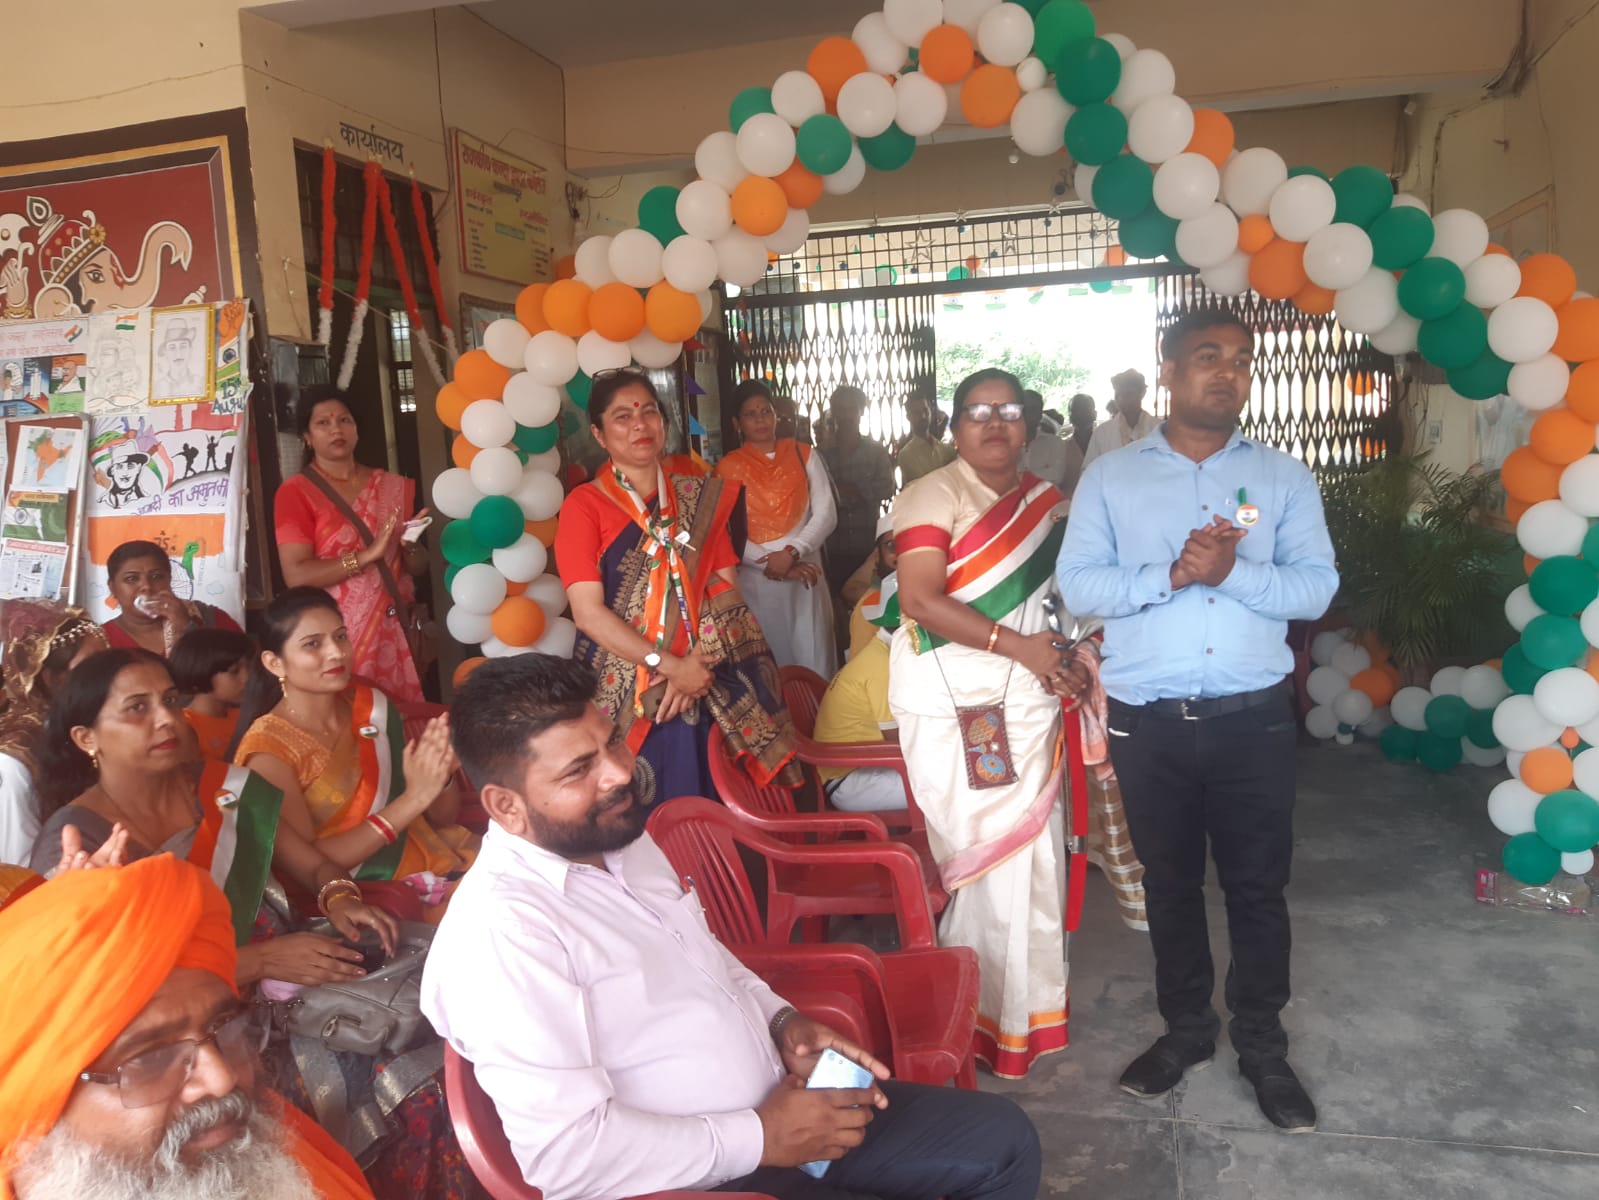 जिला प्रशासन द्वारा आजादी के अमृत महोत्सव वर्ष 15 अगस्त 2022 को सहारनपुर में रूट मार्च निकाला गया जिसमें सहारनपुर जिले के माध्यमिक शिक्षा परिषद एवं बेसिक शिक्षा परिषद से संबंधित विद्यालयों ने प्रतिभाग किया।